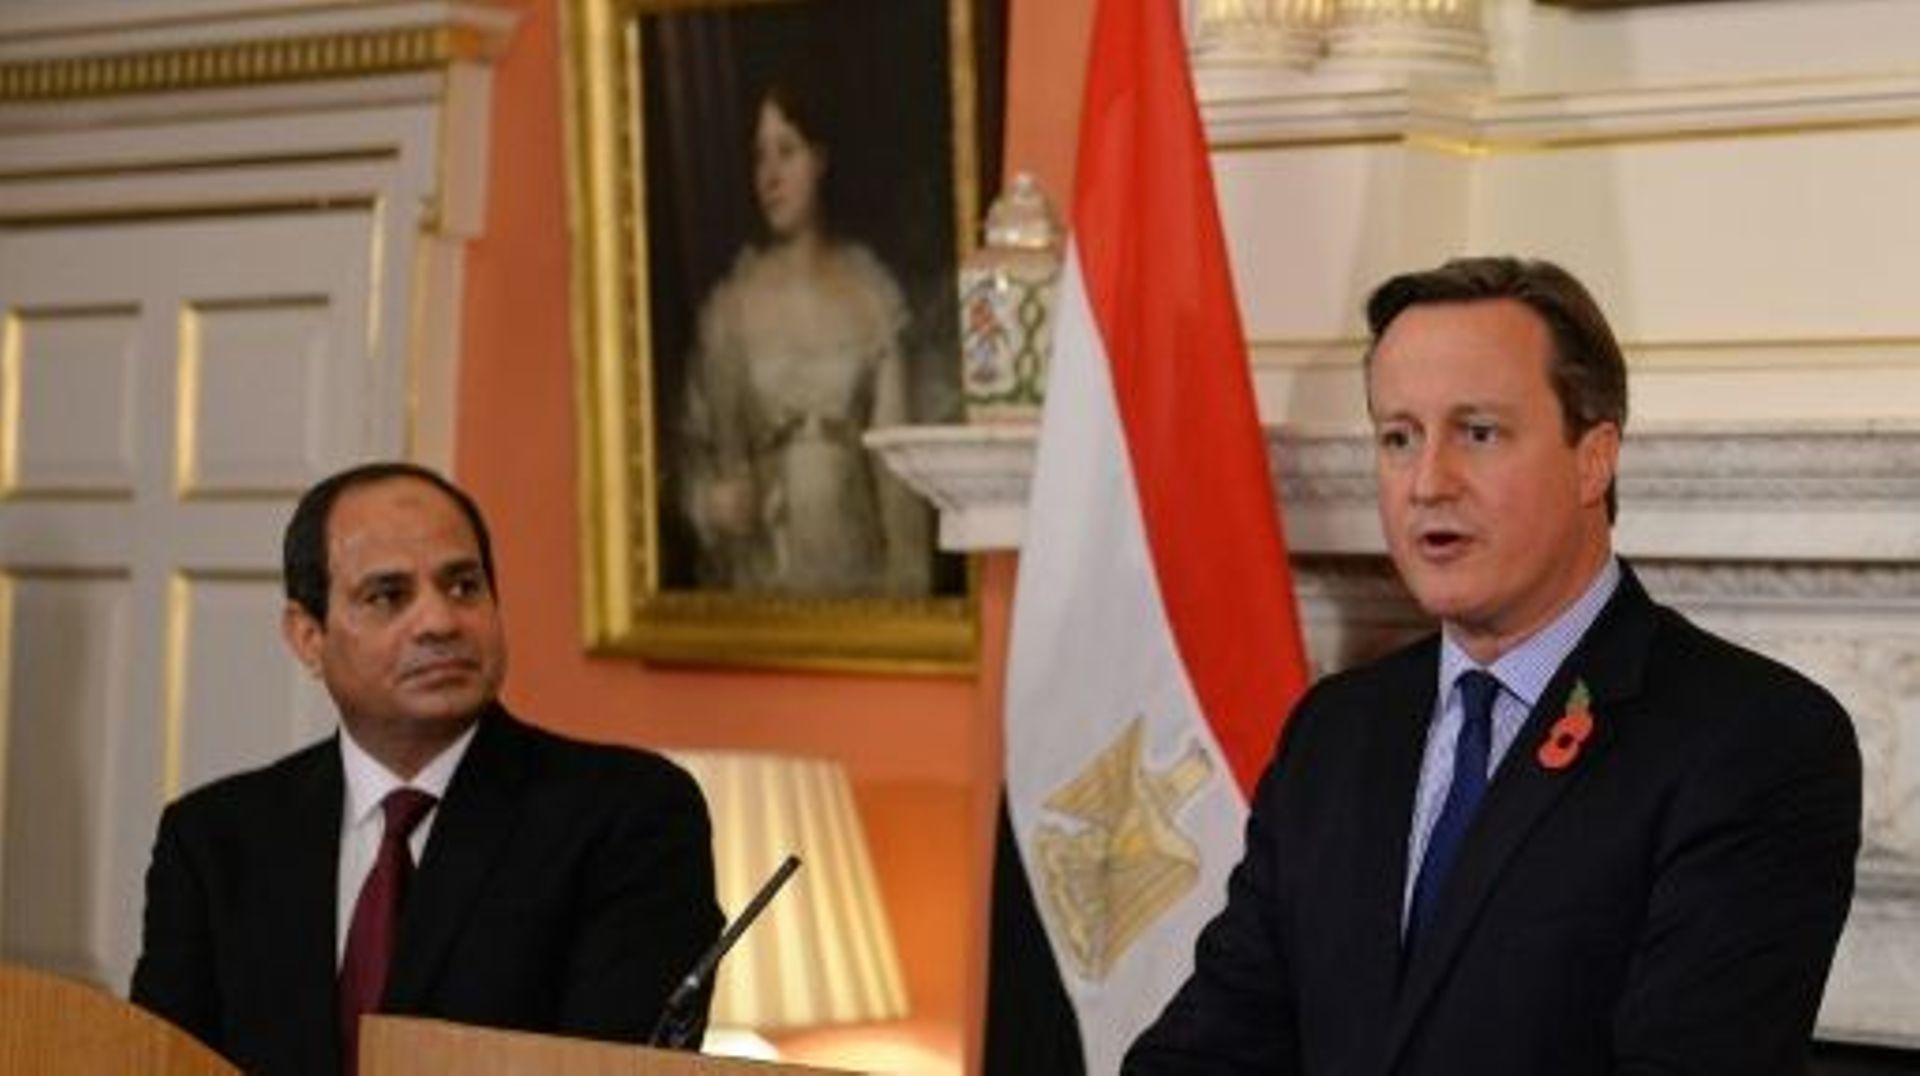 Le président égyptien Abdel Fattah al-Sissi et le Premier ministre britannique David Cameron lors d'une conférence de presse commune le 5 novembre 2015 à Londres